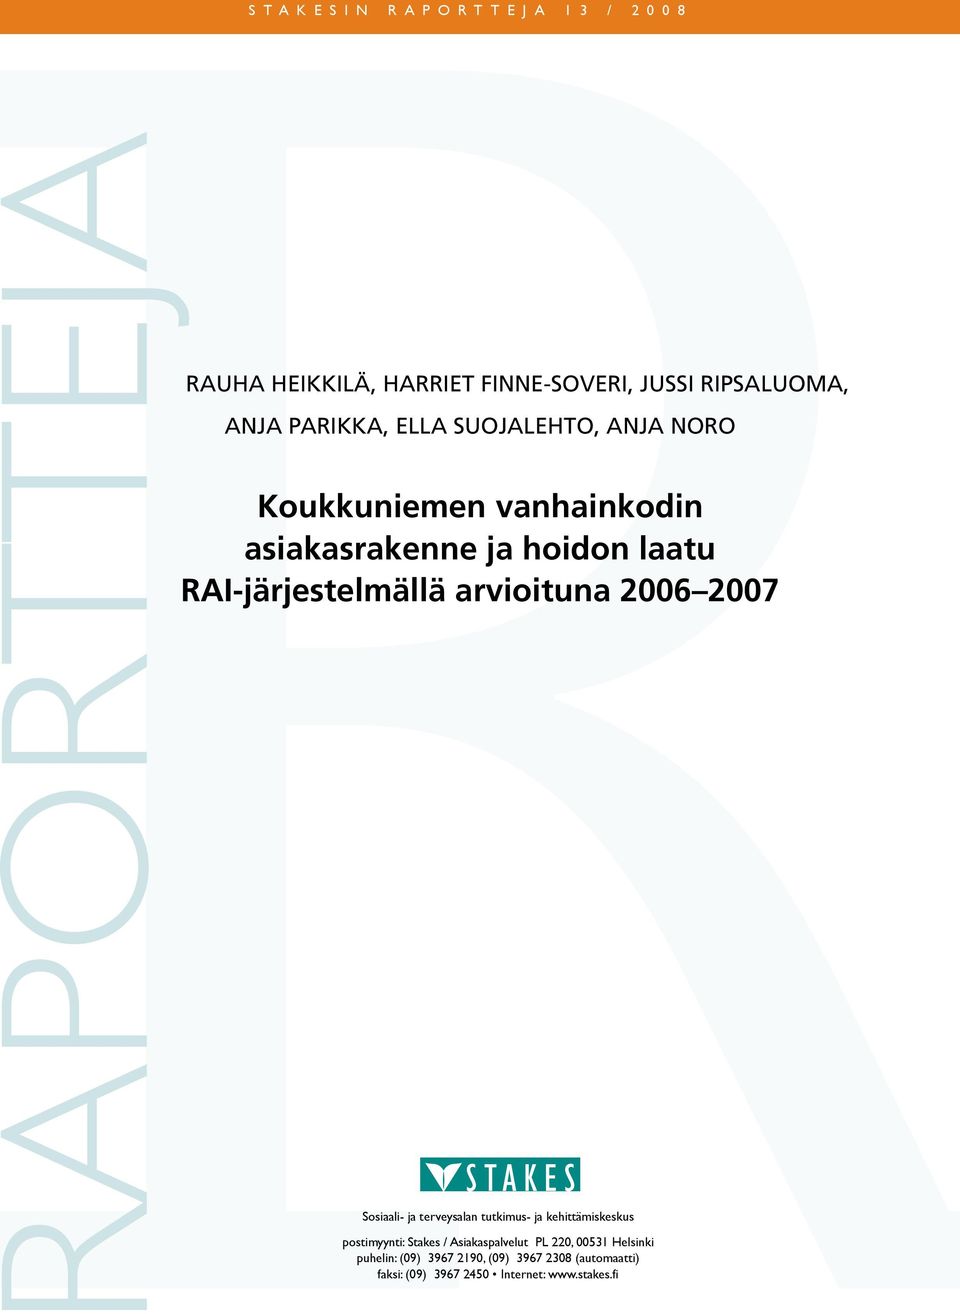 2006 2007 Sosiaali- ja terveysalan tutkimus- ja kehittämiskeskus postimyynti: Stakes / Asiakaspalvelut PL 220,